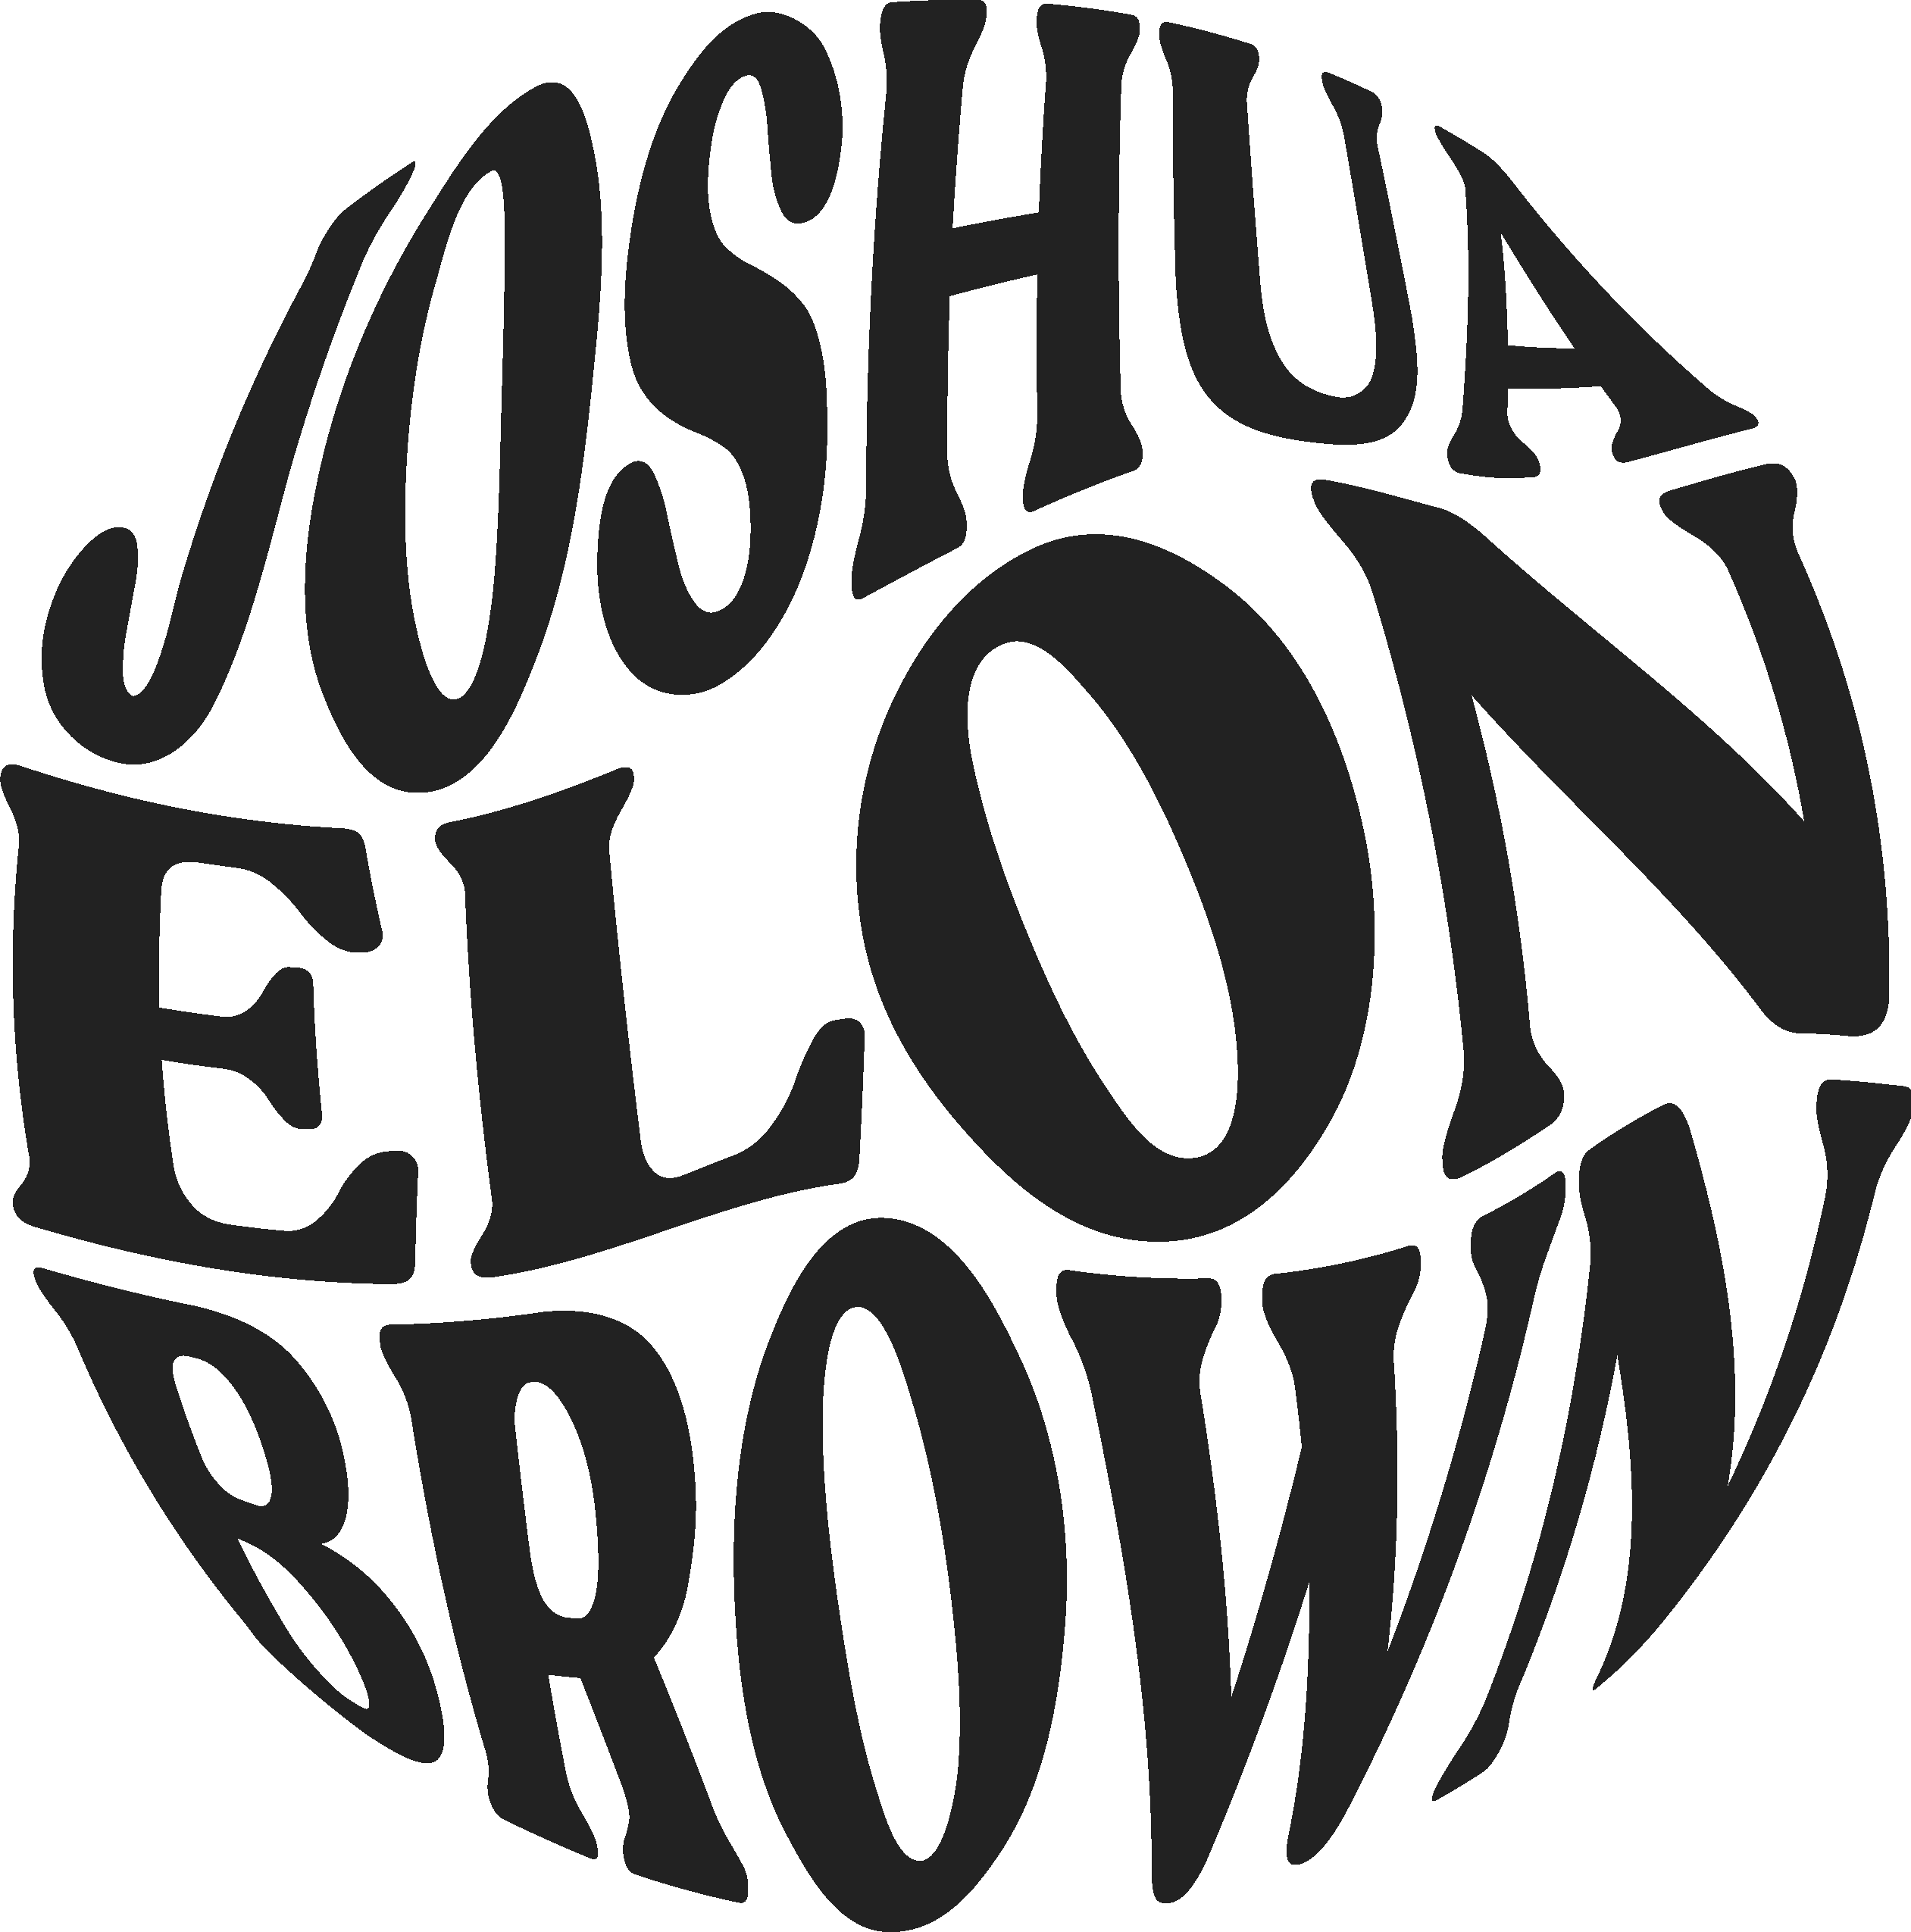 Joshua Brown